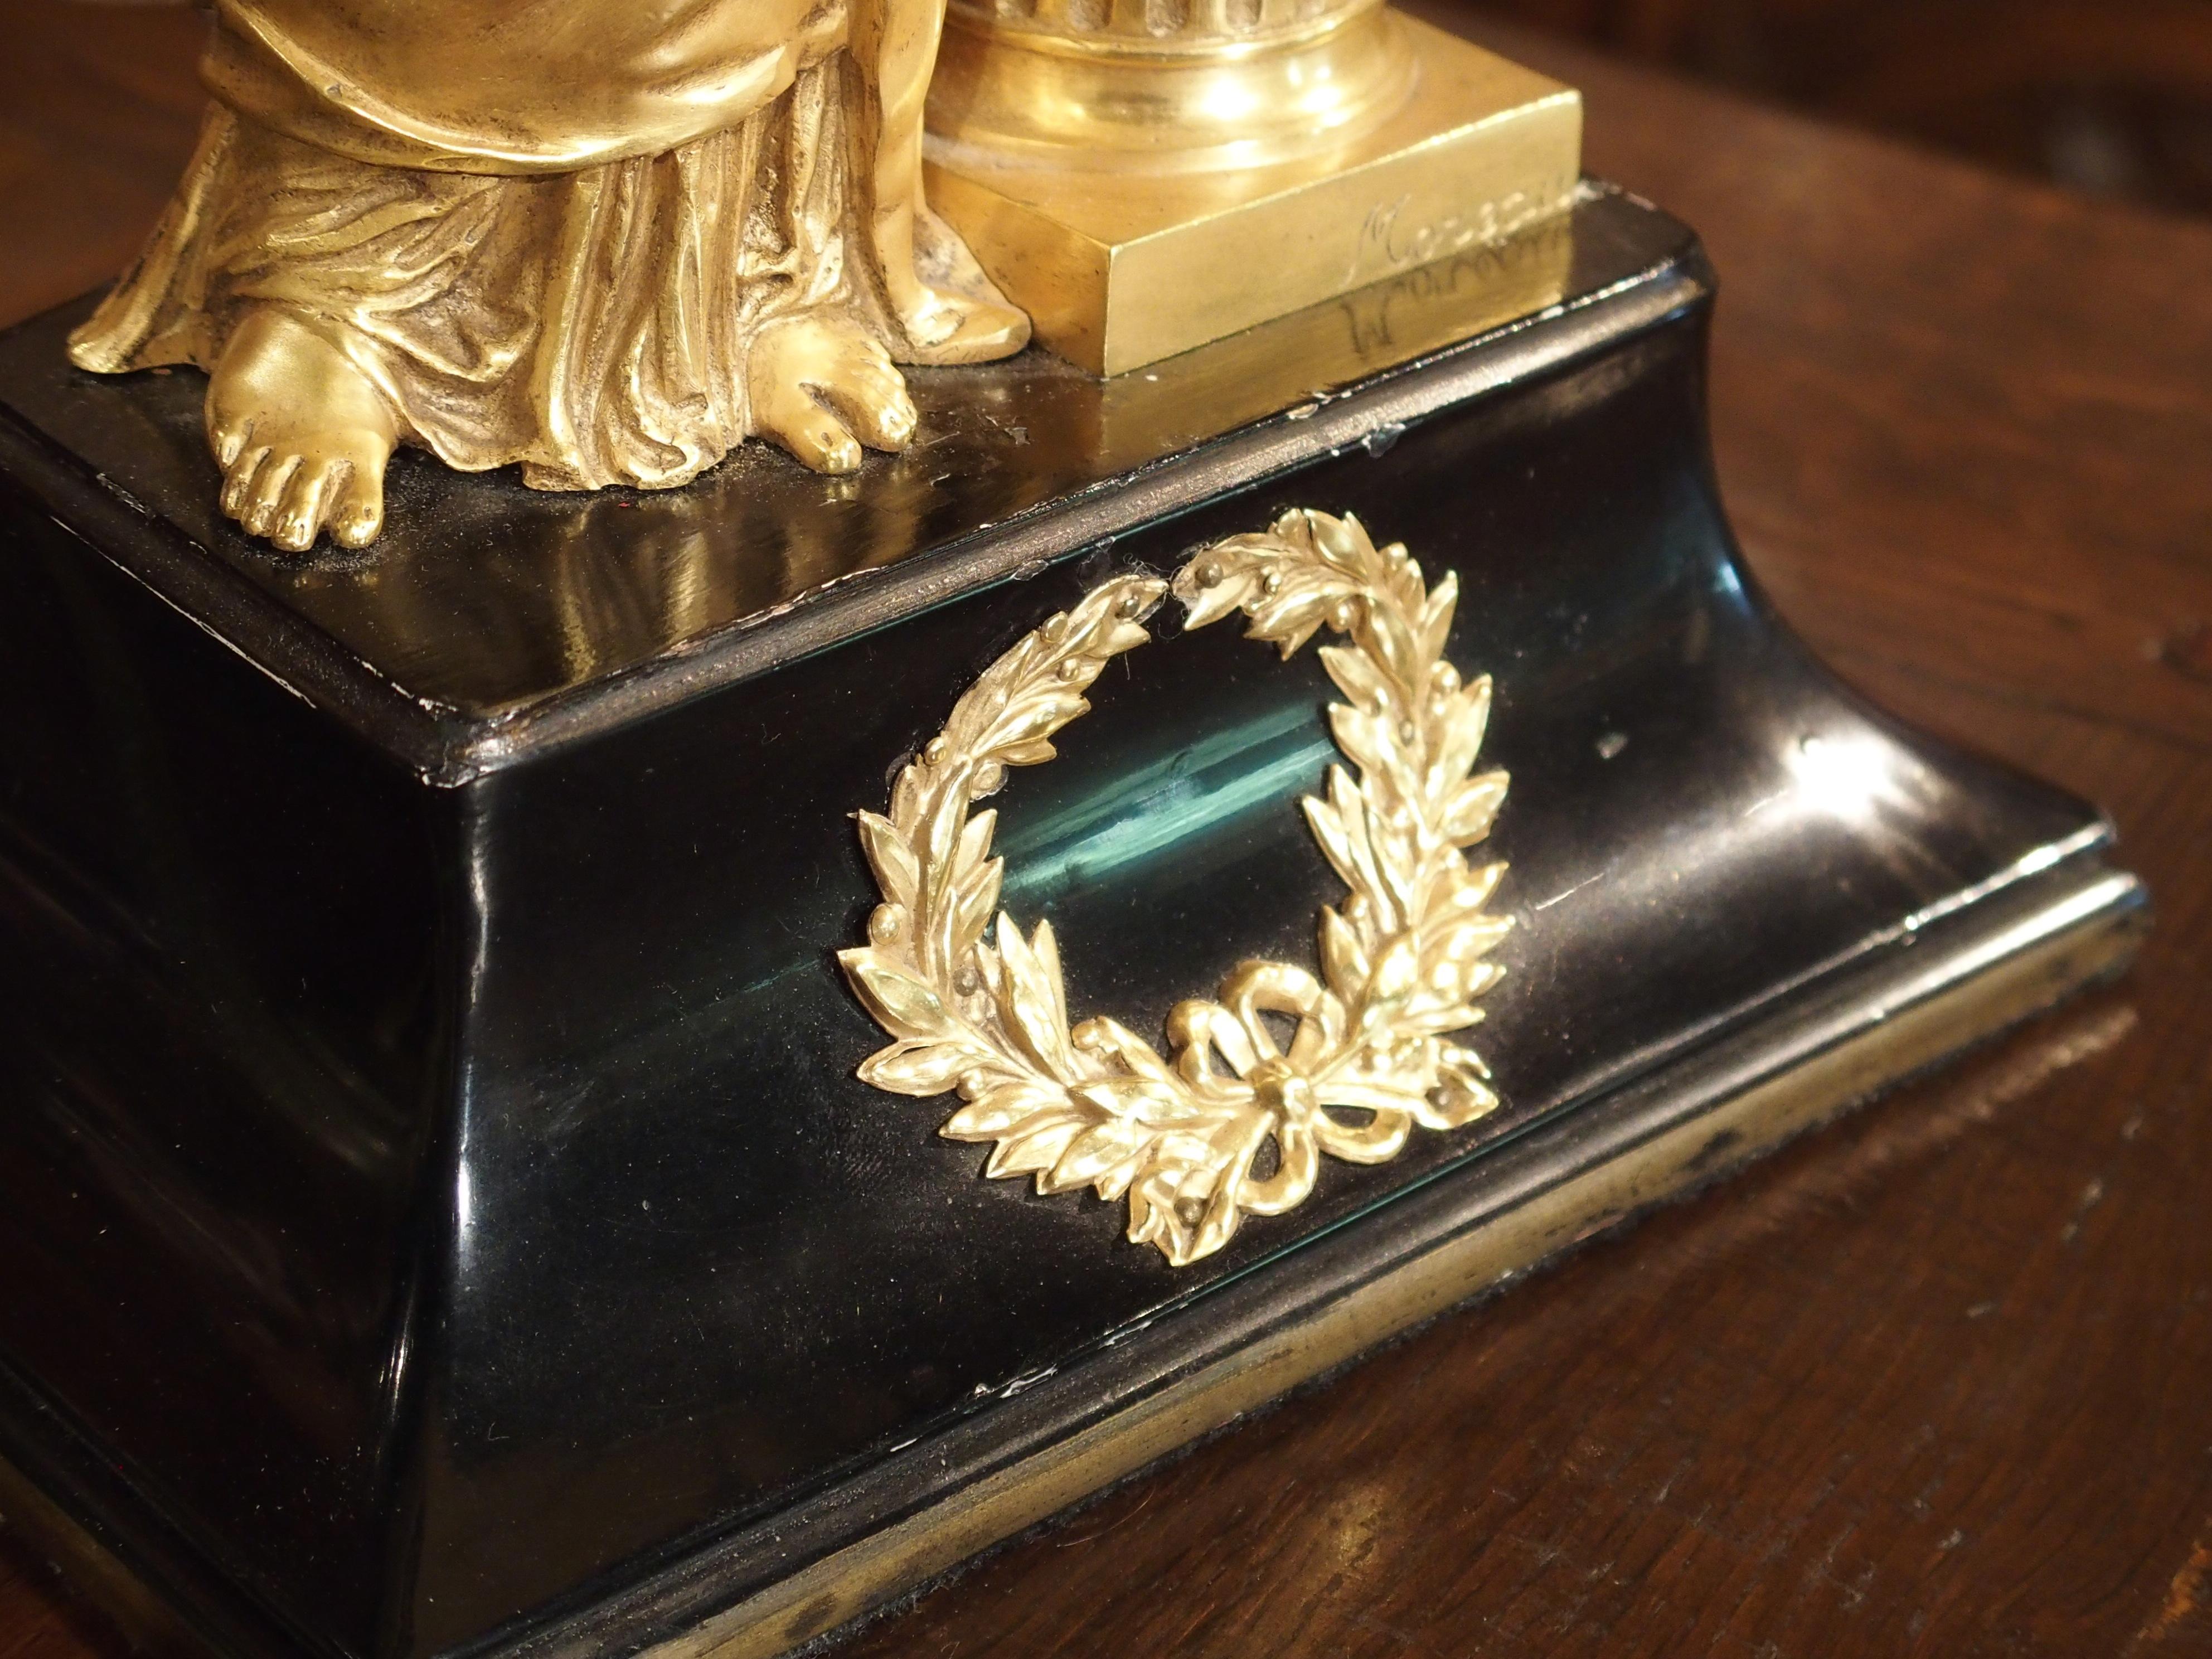 Cette élégante lampe de table française en bronze doré signée Moreau représente Erato, la déesse grecque de la musique, de la danse et du chant. Elle est représentée tenant une lyre tandis que son bras gauche est appuyé sur un livre ouvert qui